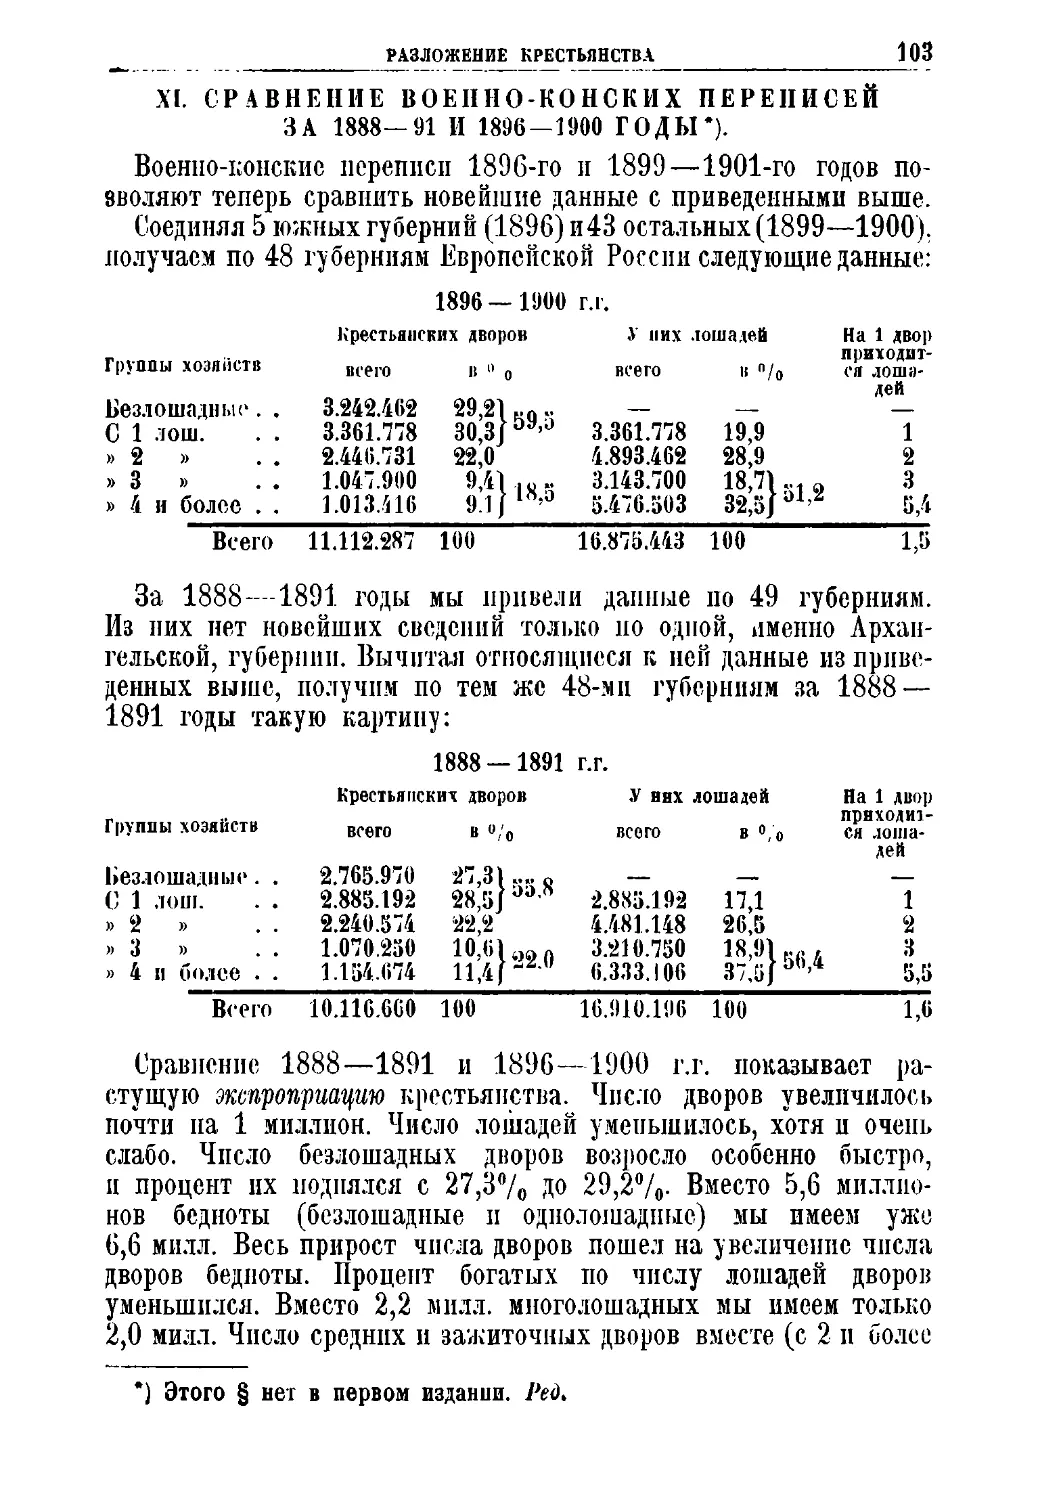 XI. Сравнение военно-конских переписей за 1888 — 1891 и 1896—1900 гг.